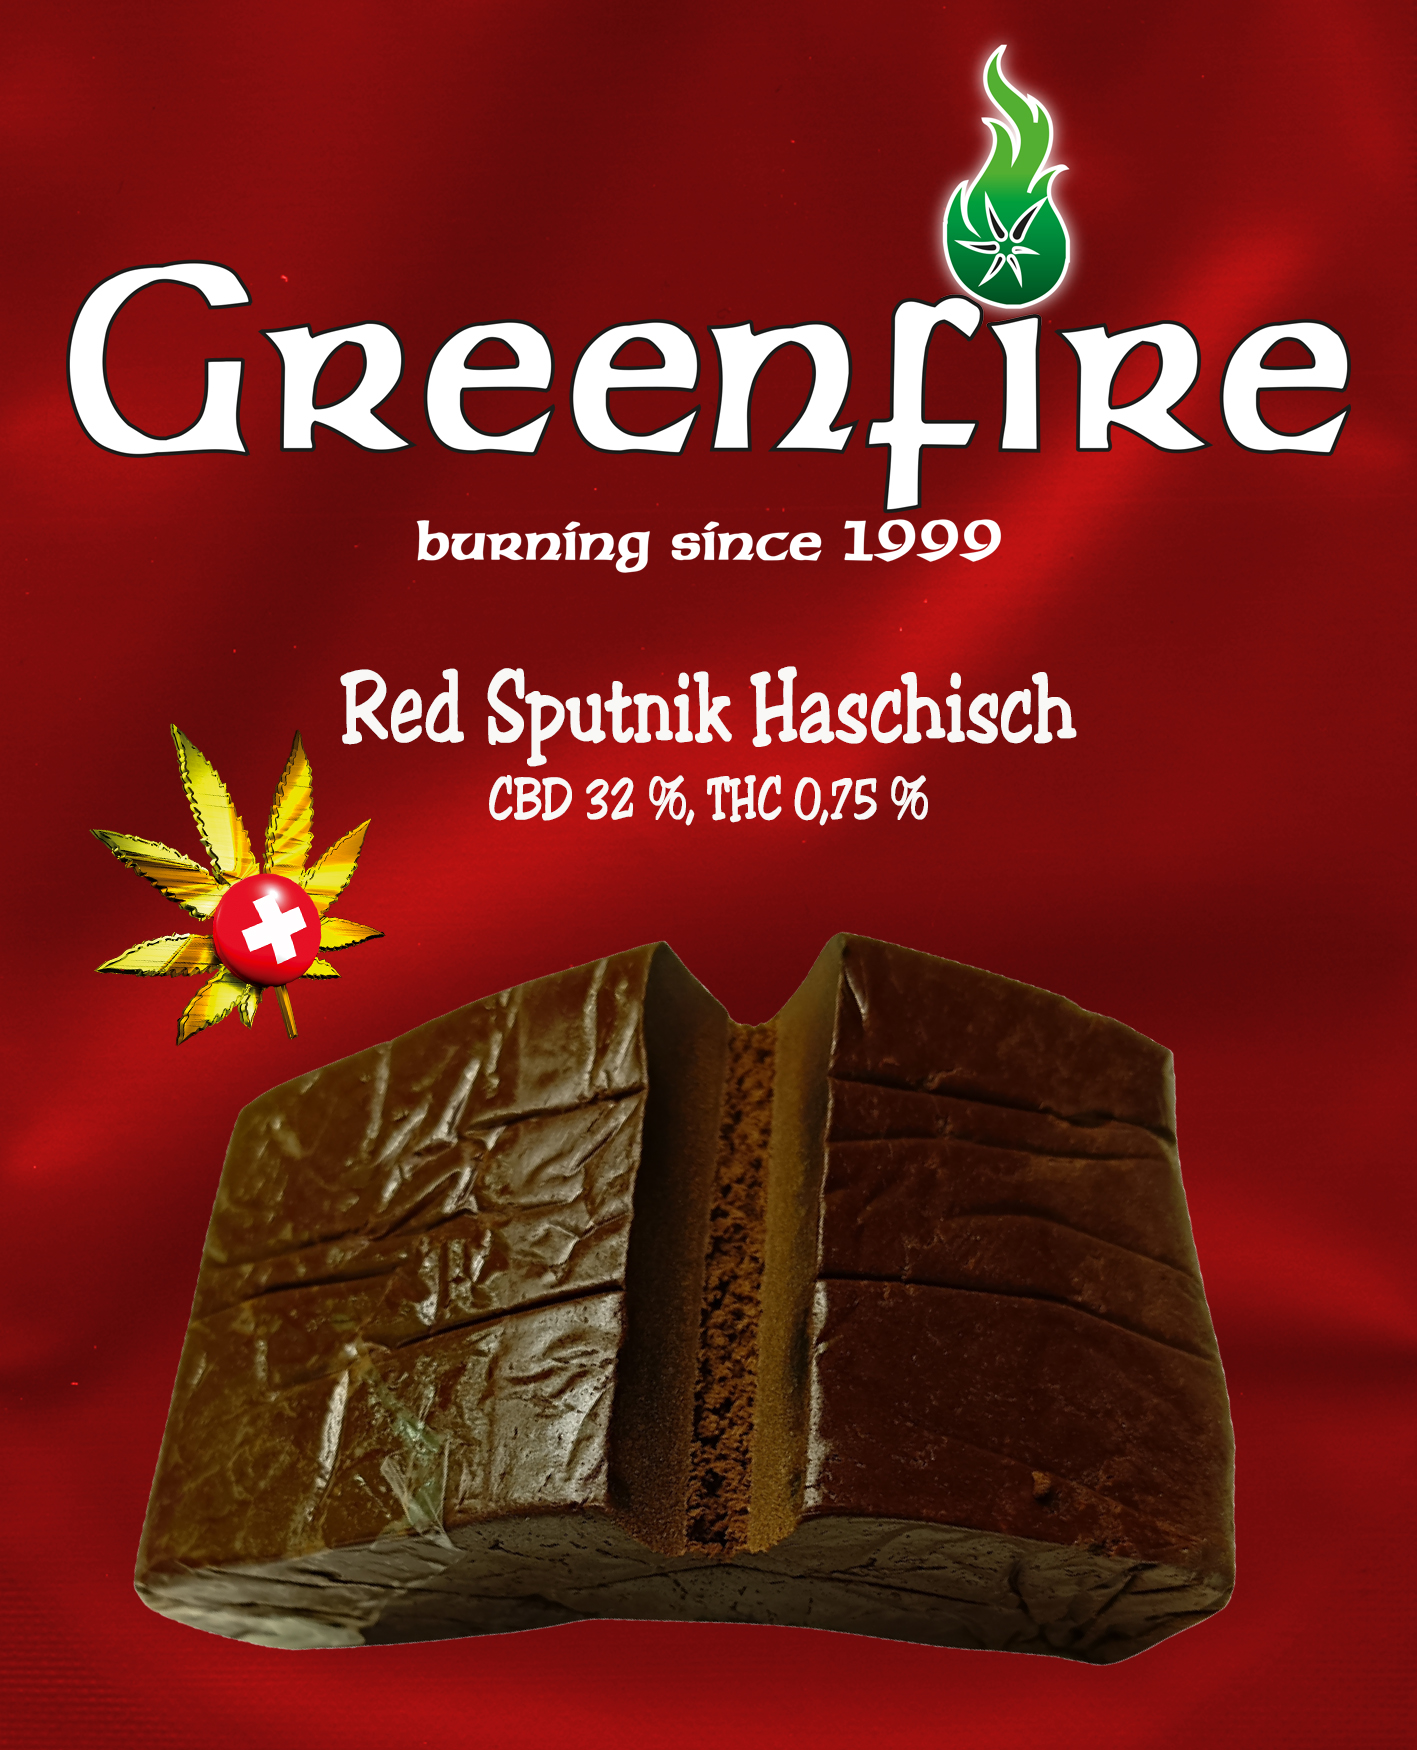 Red Spudnik Haschisch